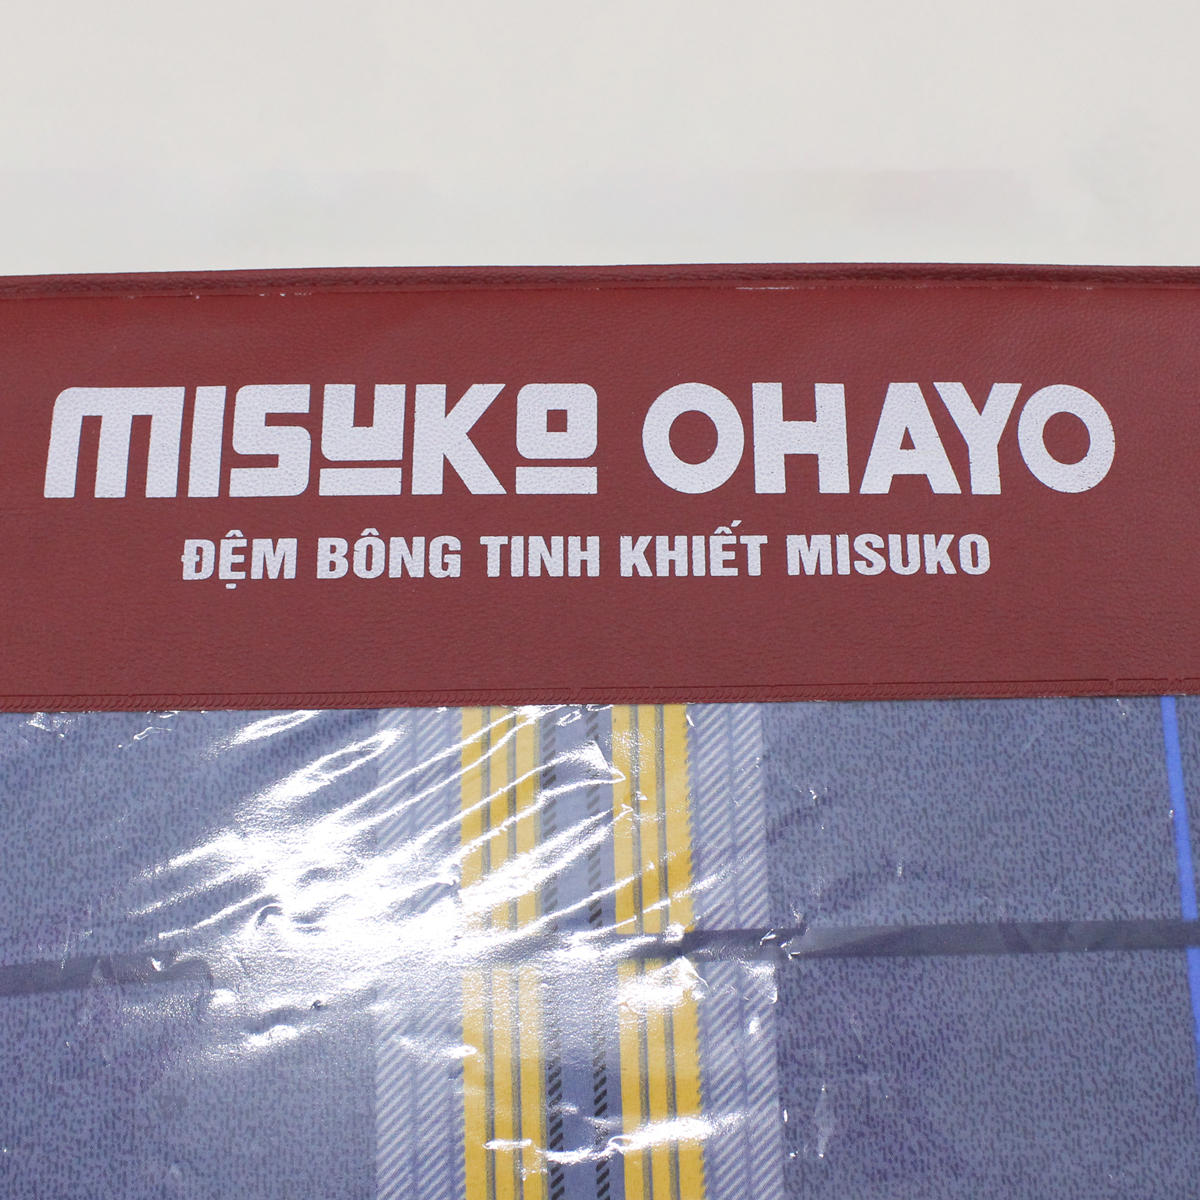 Đệm bông ép Nhật Bản Misuko Super Ohayo (lõi bông tinh khiết)